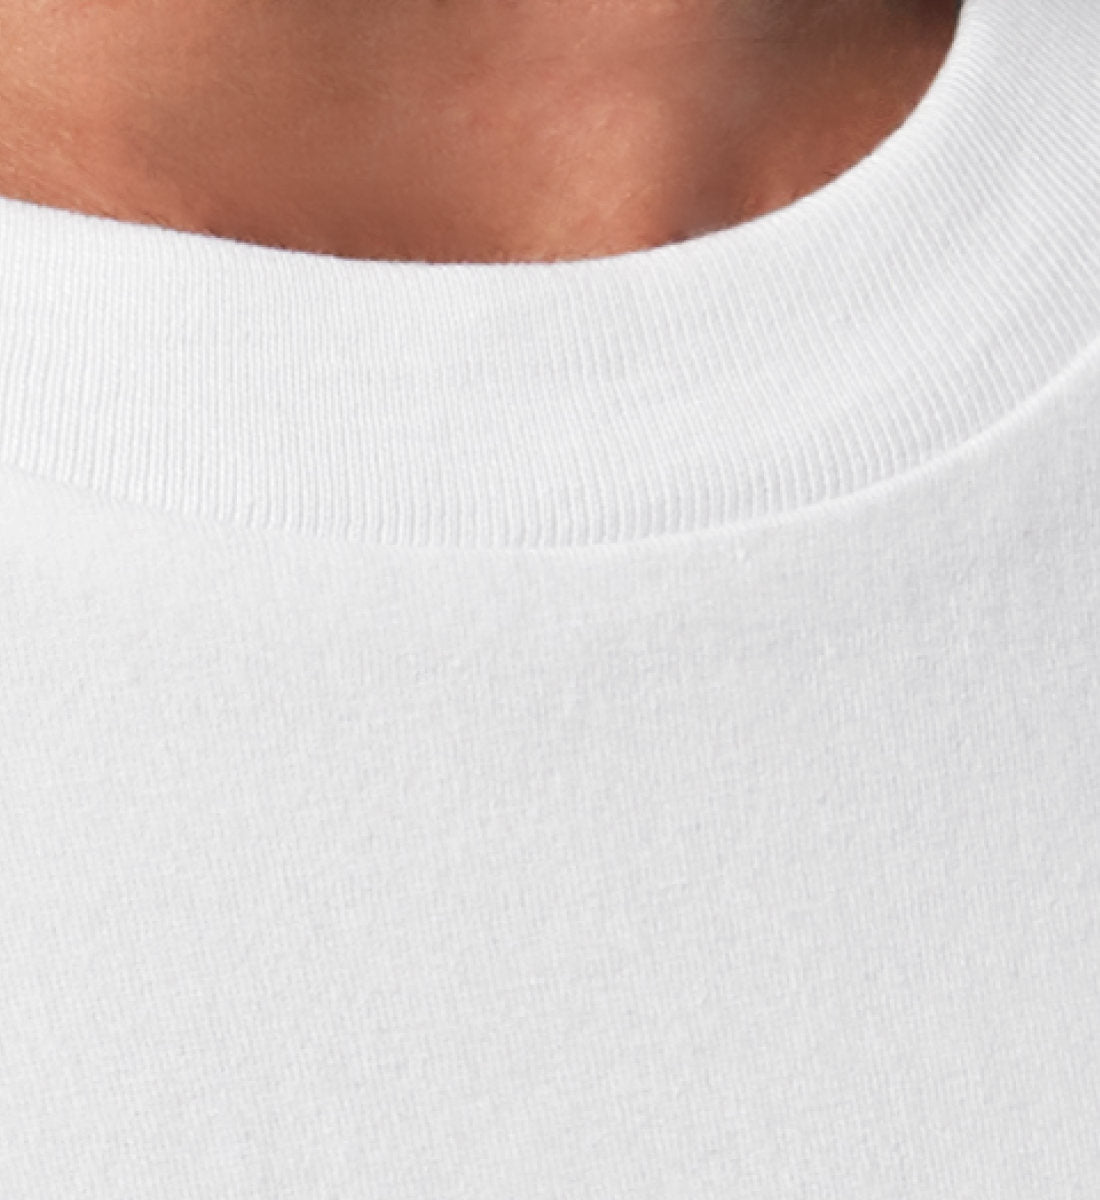 Weißes T-Shirt Unisex Relaxed Fit für Frauen und Männer bedruckt mit dem Design der Roger Rockawoo Kollektion Engelszahl 777